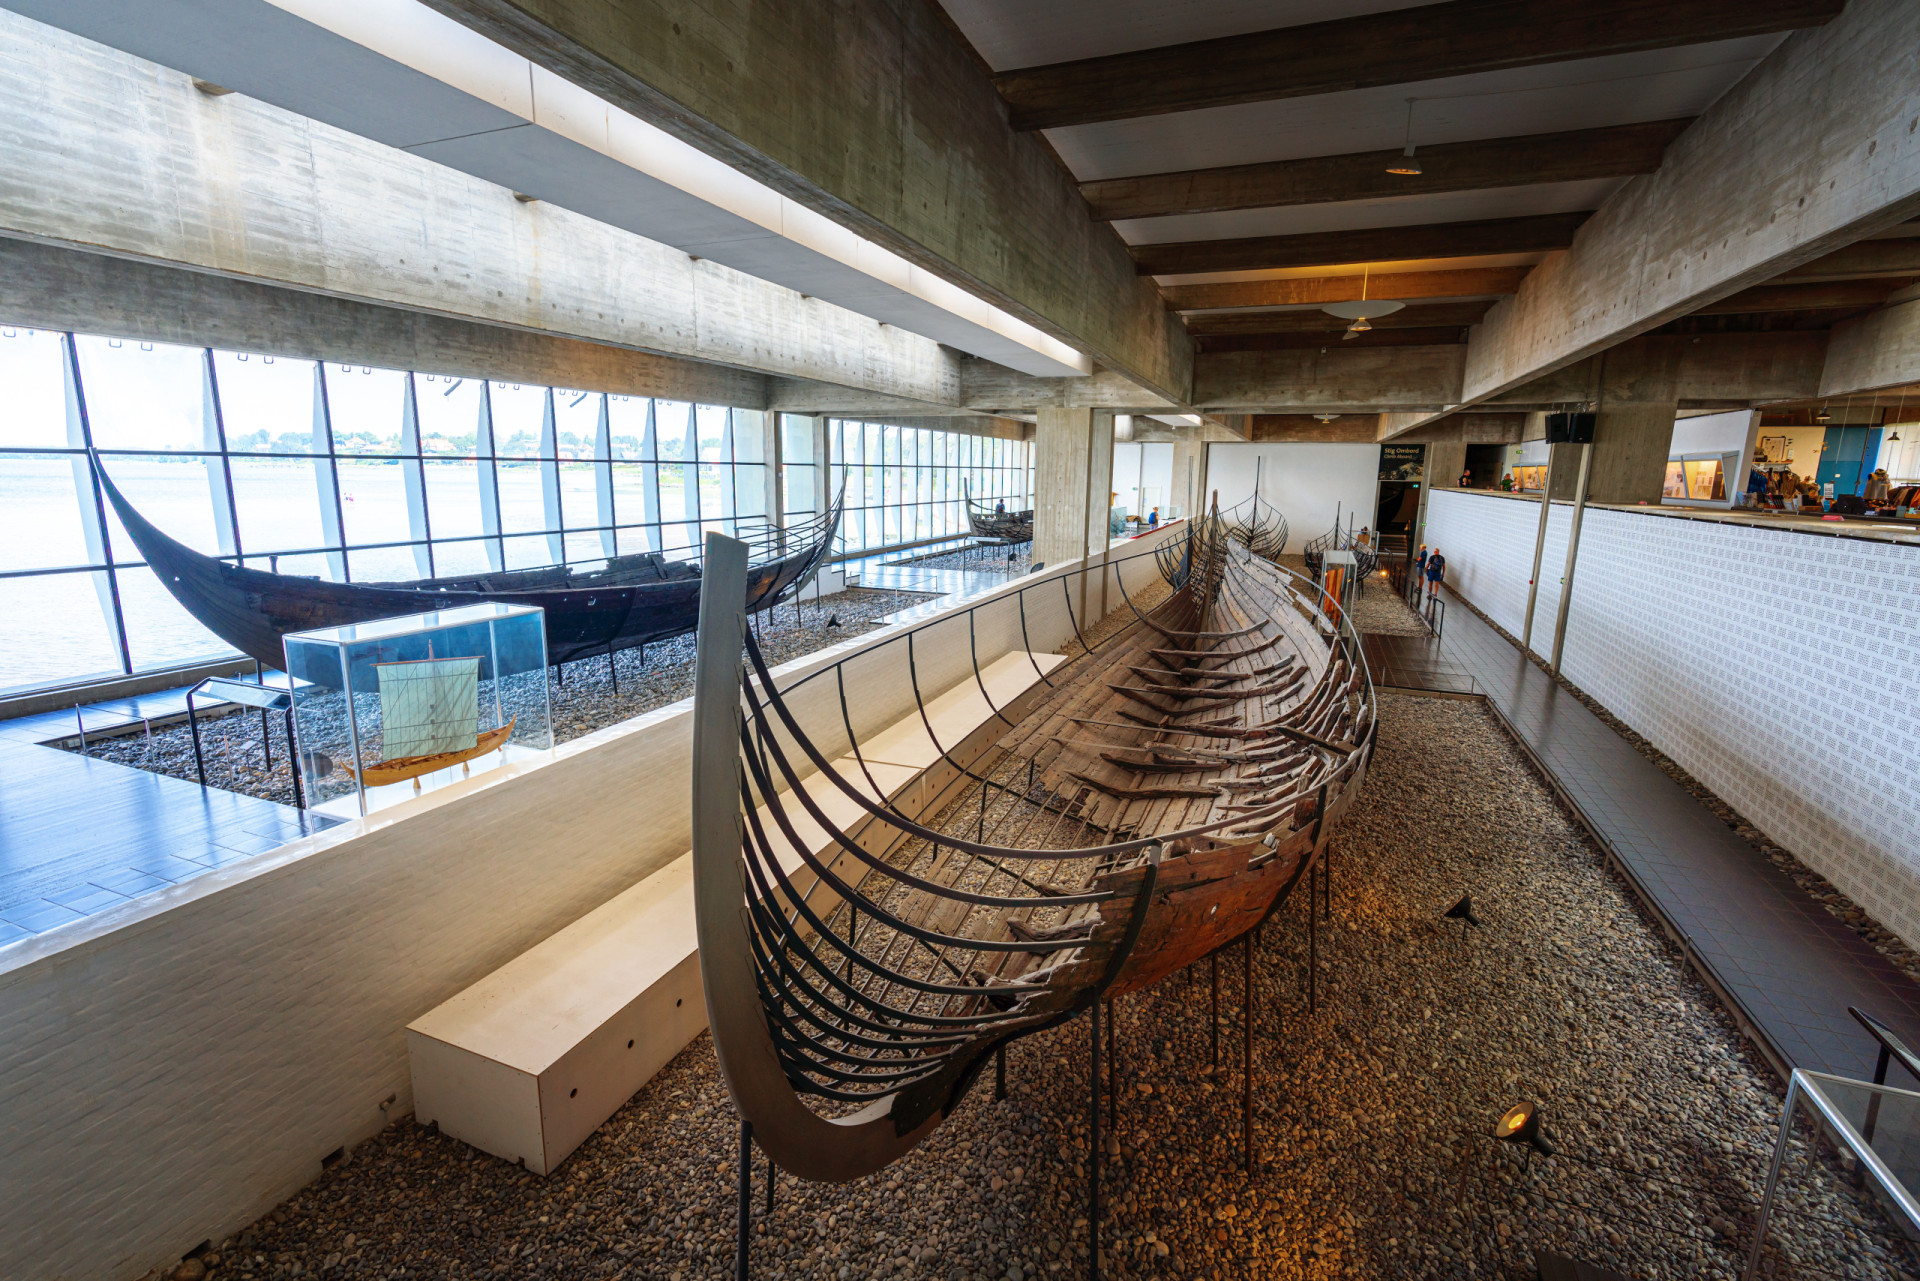 <p>Ce musée permet aux visiteurs d'admirer les navires utilisés par les marins scandinaves, mais aussi de comprendre comment les vikings construisaient les galères ou les chaloupes et comment les constructeurs de navires actuels restaurent les anciens bateaux restés sous l'eau.</p><p><a href="https://www.msn.com/fr-fr/community/channel/vid-7xx8mnucu55yw63we9va2gwr7uihbxwc68fxqp25x6tg4ftibpra?cvid=94631541bc0f4f89bfd59158d696ad7e">Suivez-nous et accédez tous les jours à du contenu exclusif</a></p>